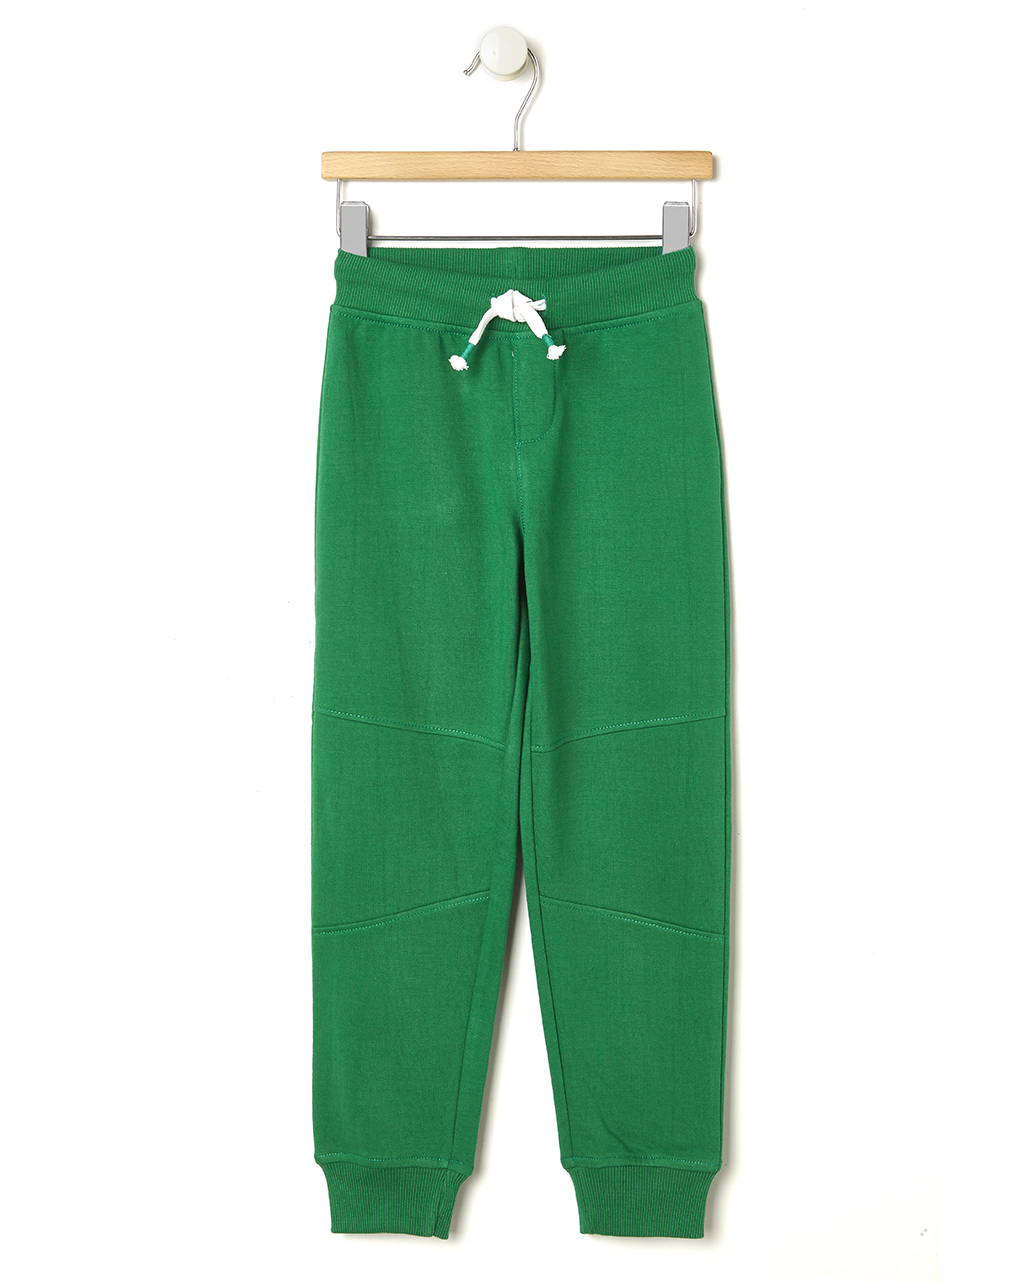 Παντελόνι Φόρμας Basic Πράσινο Μεγ.8-9/9-10 Ετών για Αγόρι